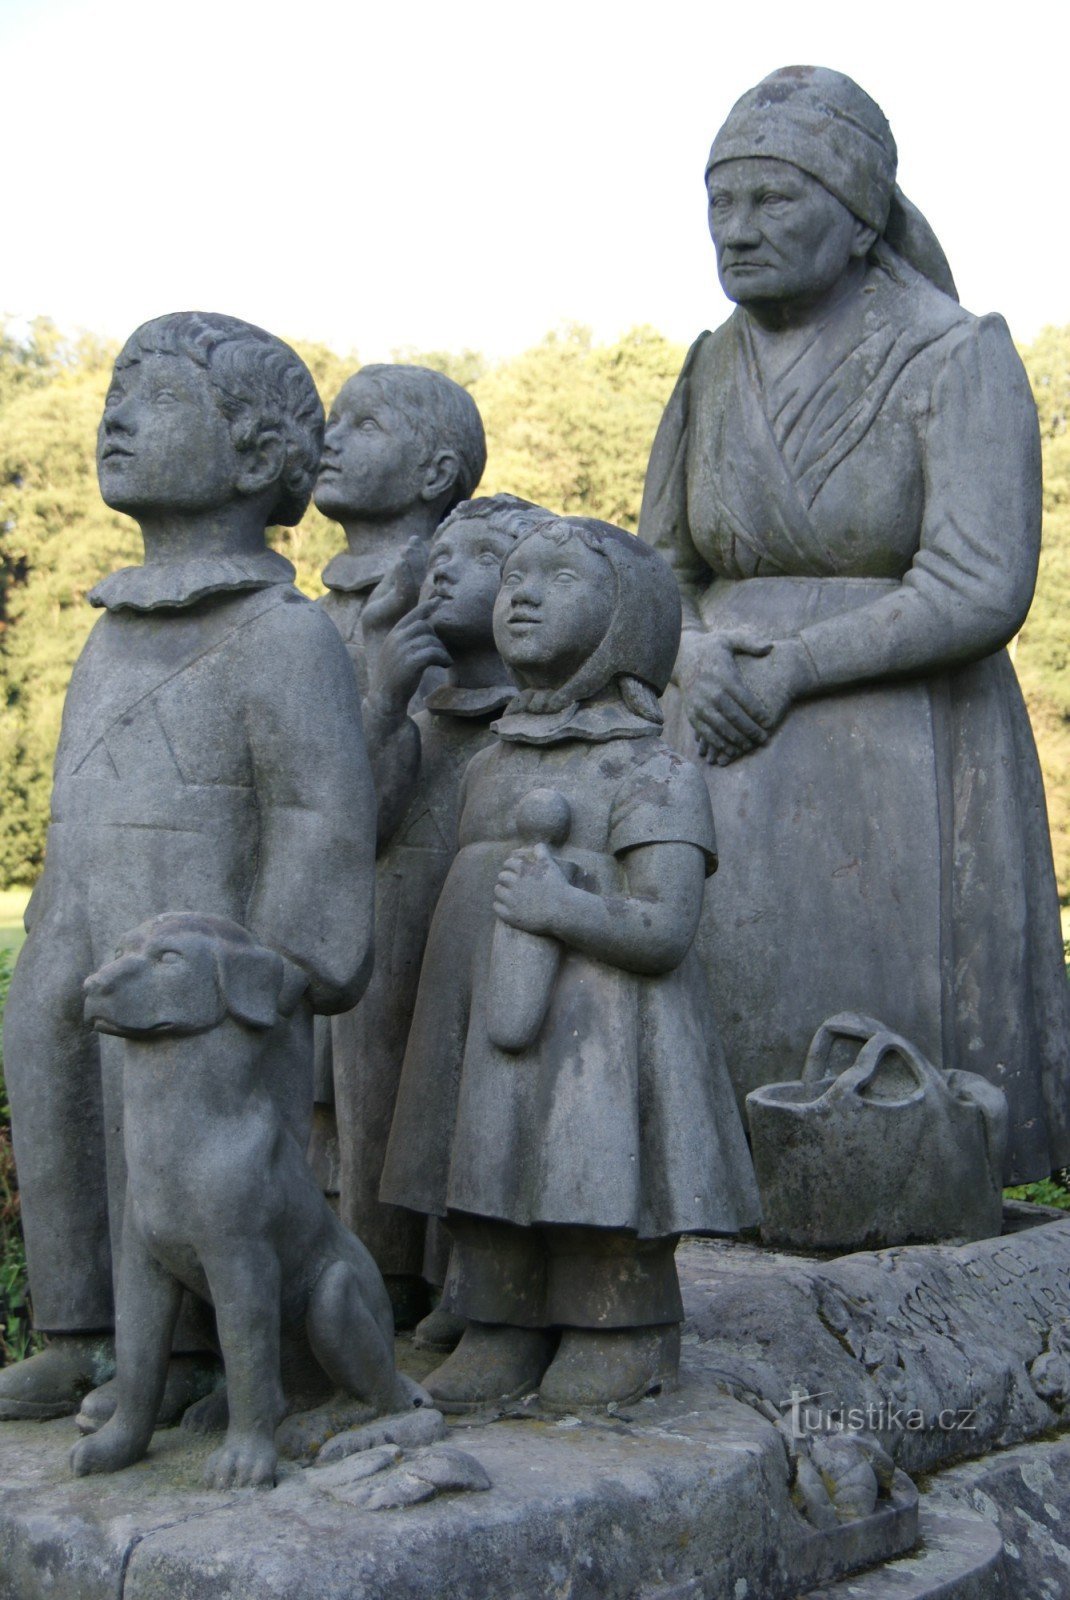 Thung lũng Bà ngoại - tác phẩm điêu khắc Bà ngoại với các cháu